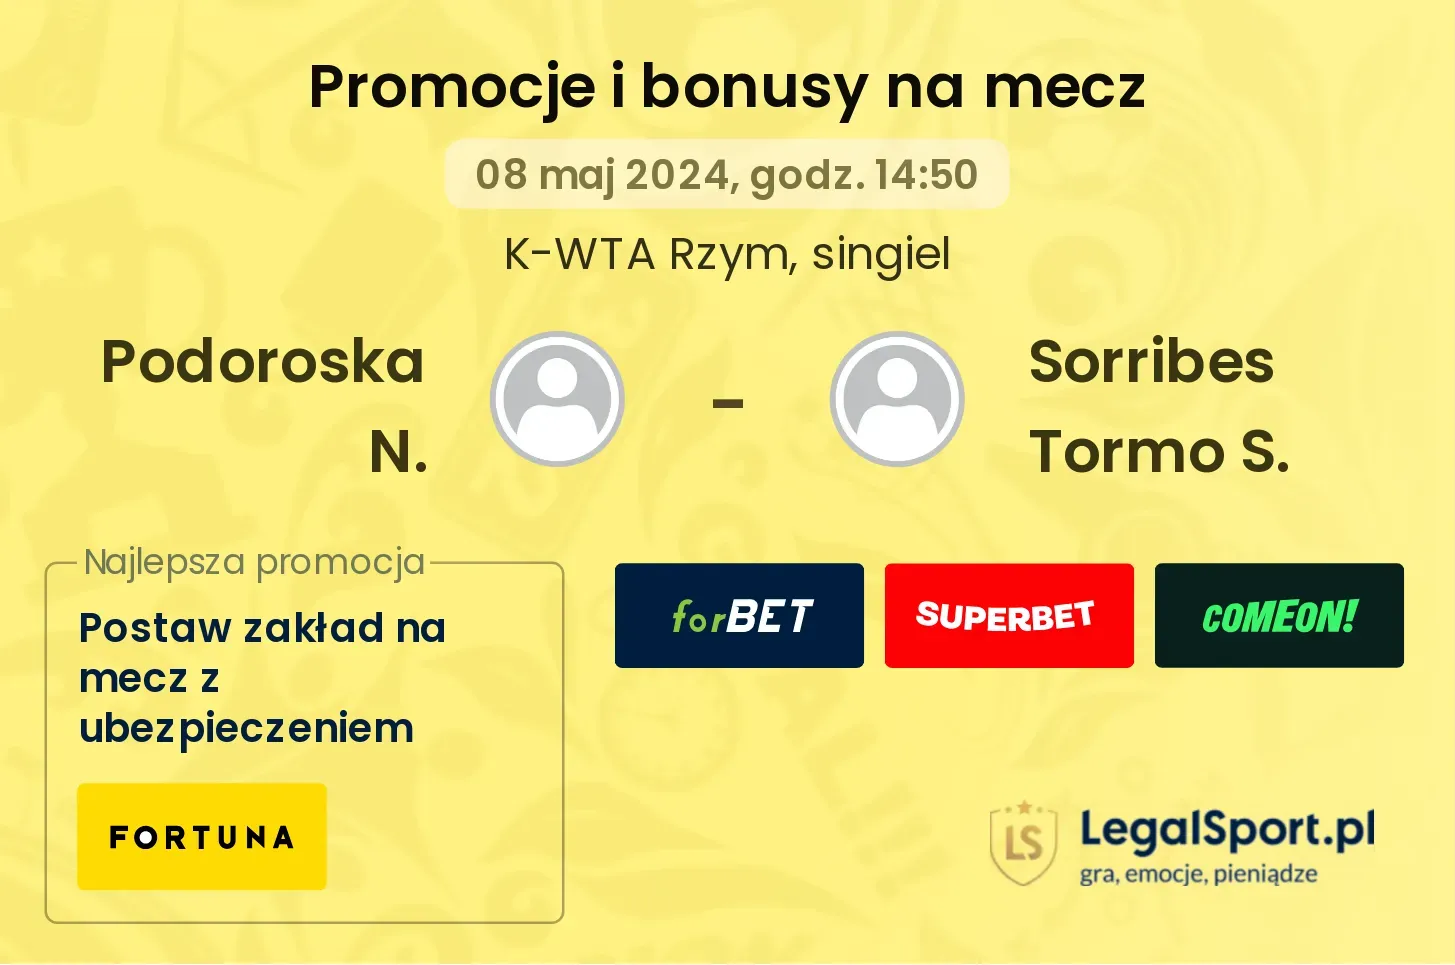 Podoroska N. - Sorribes Tormo S. promocje bonusy na mecz